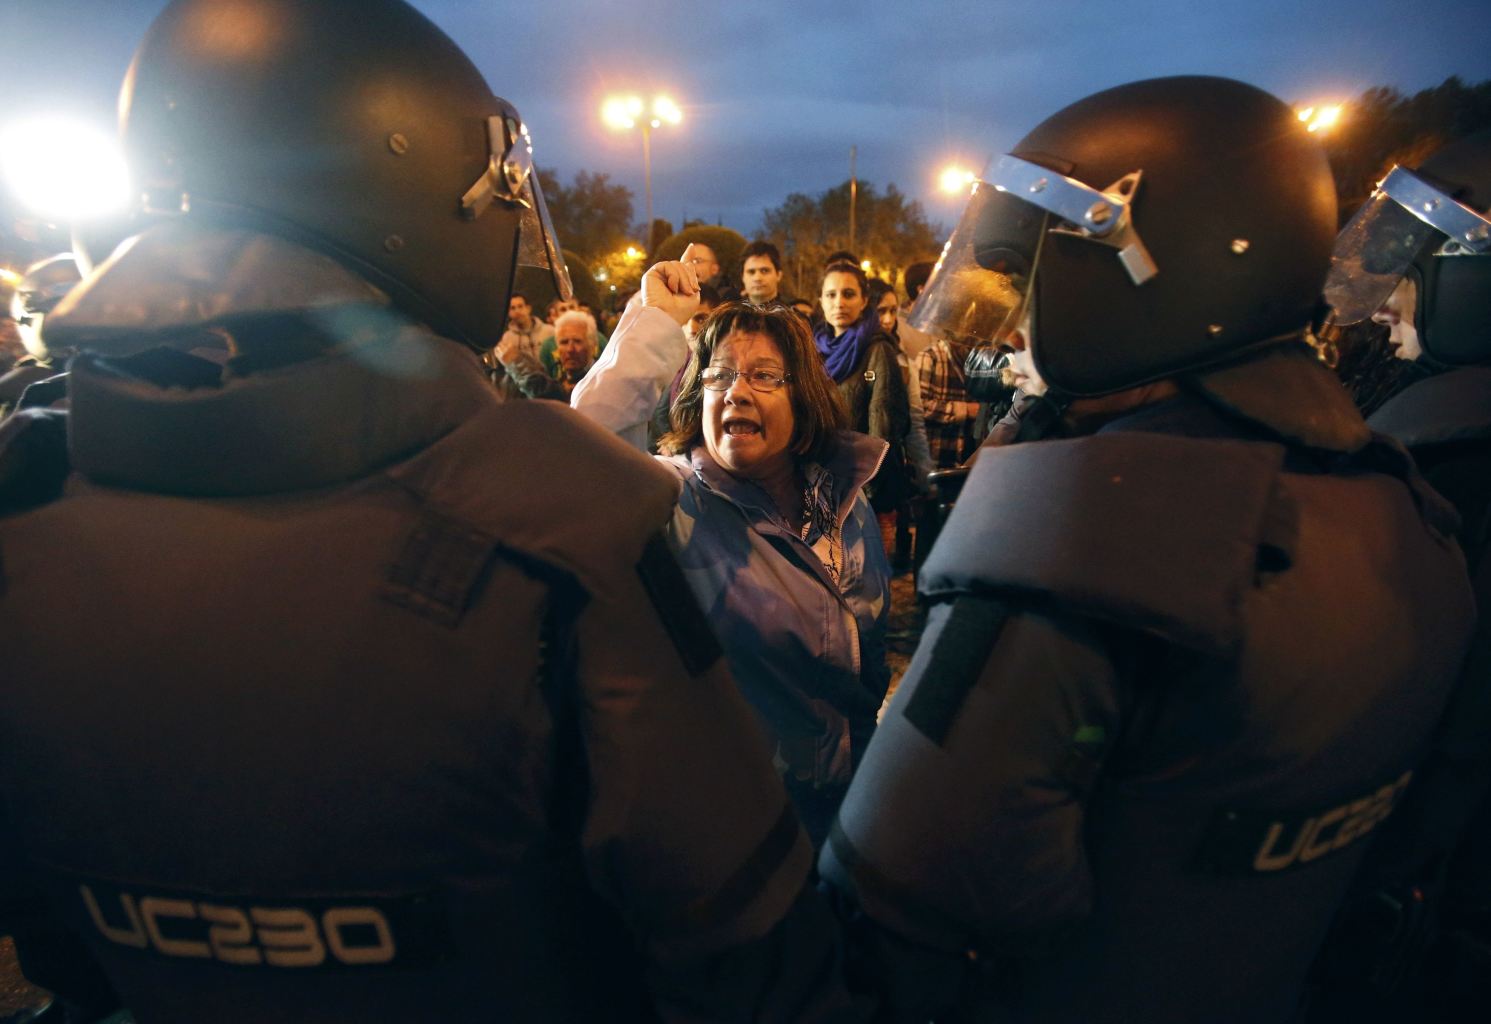 В Испании пытались штурмом взять парламент 